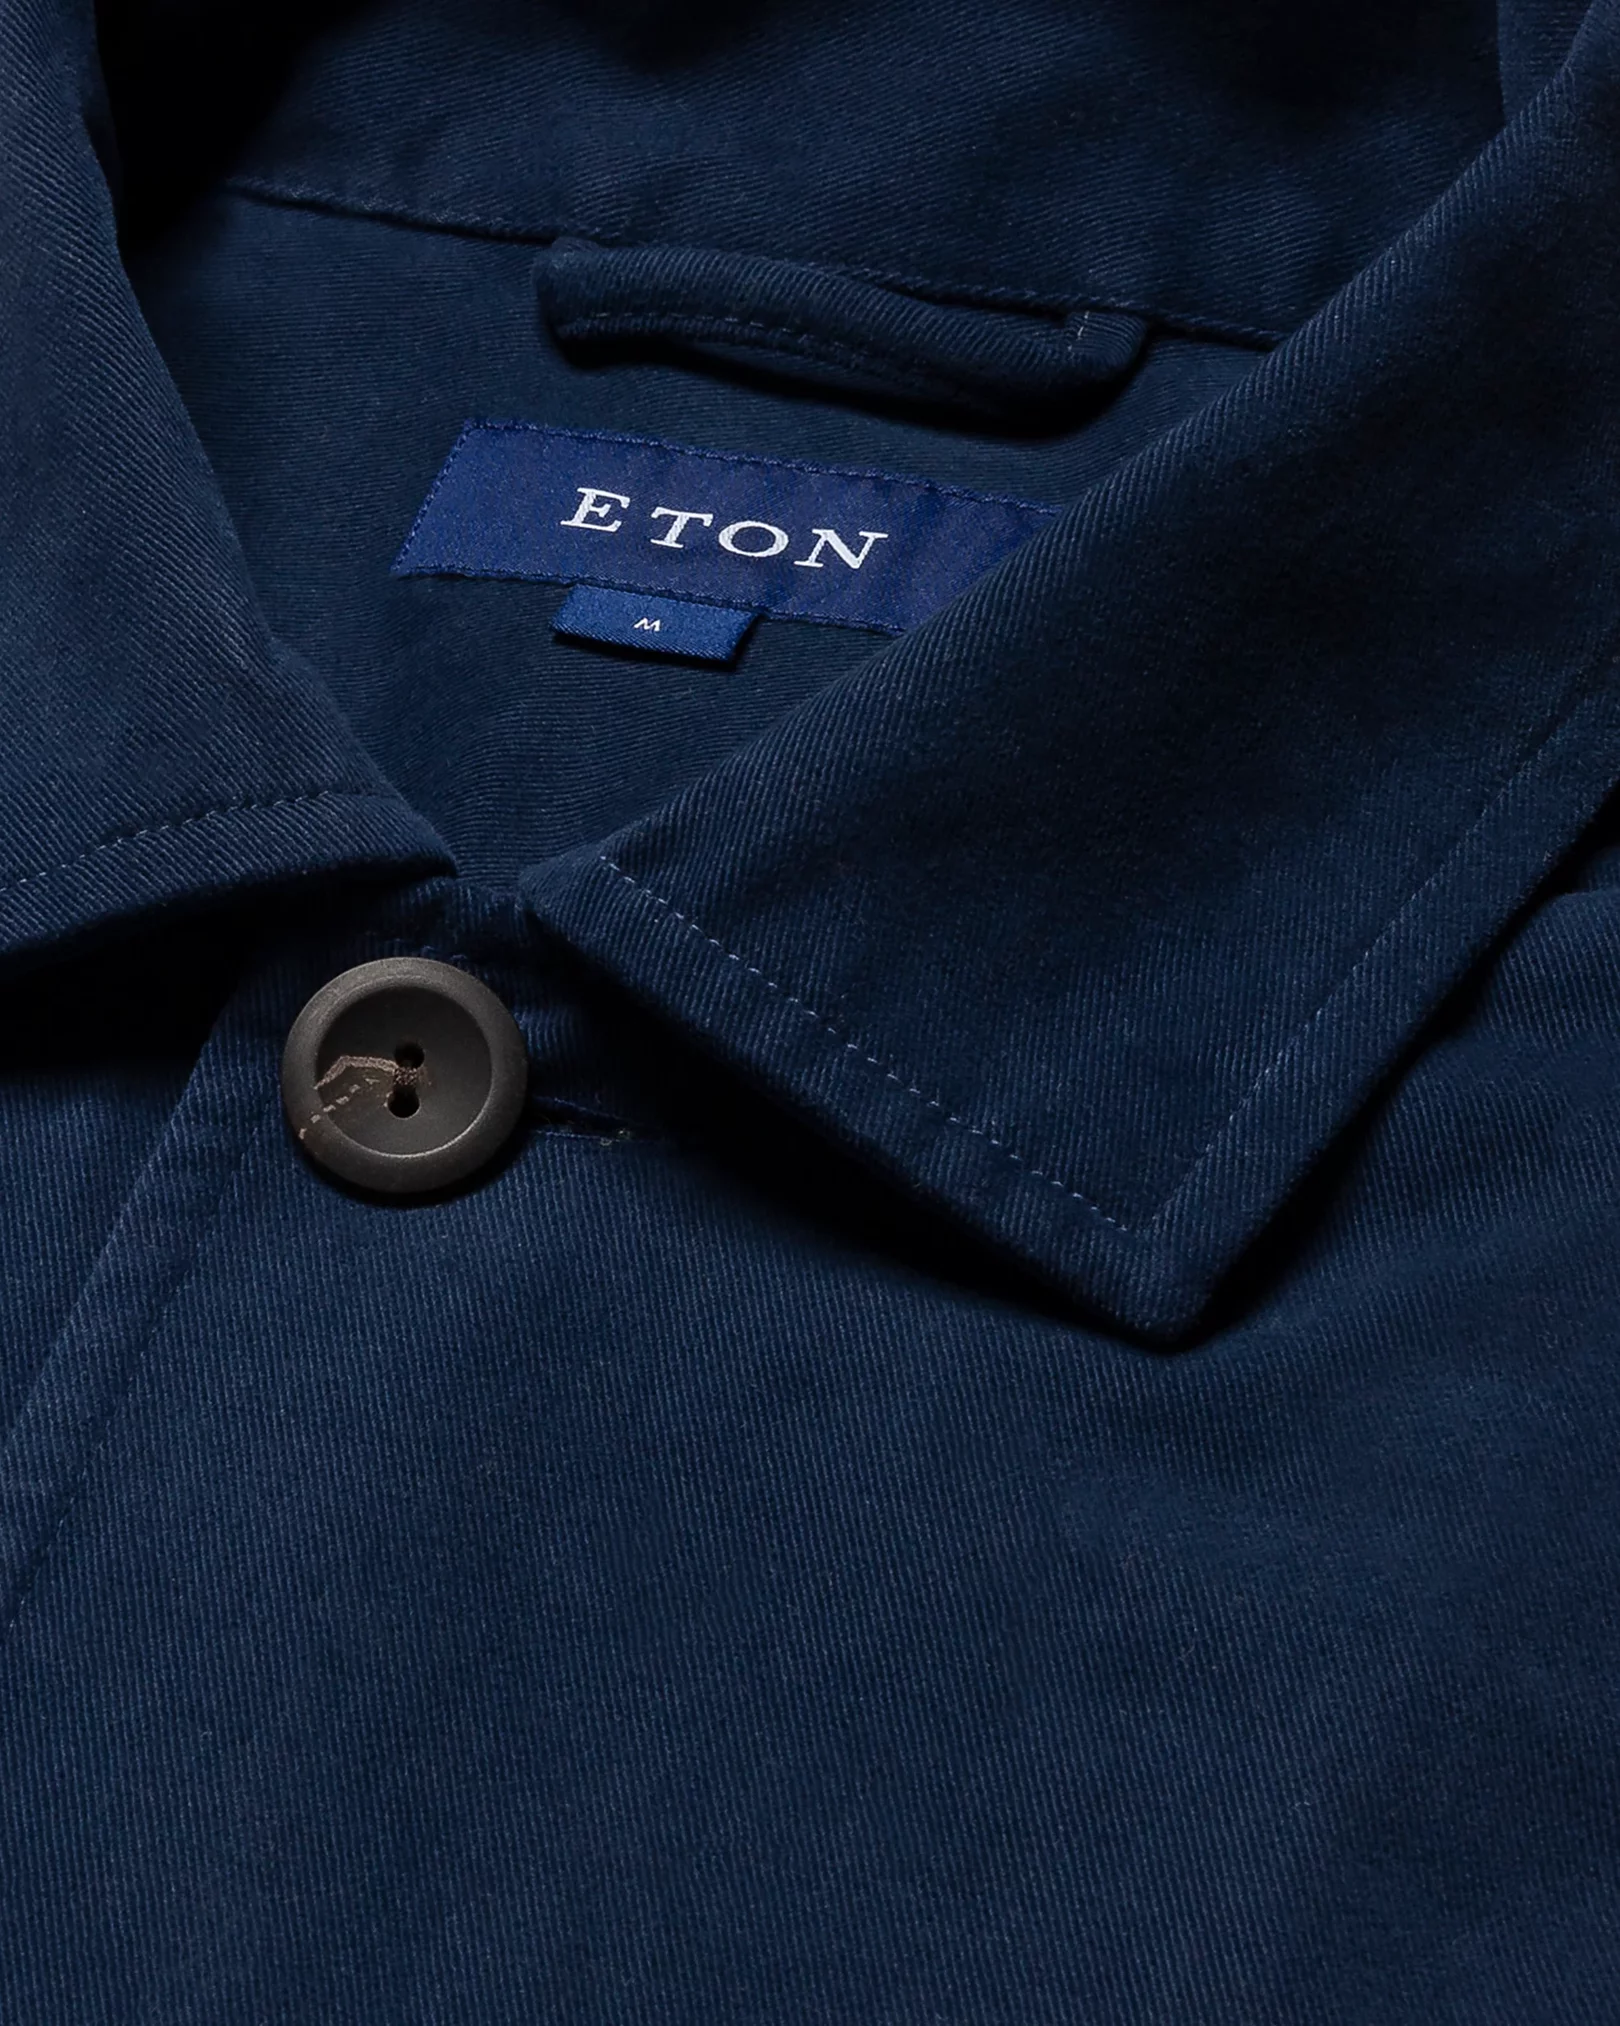 Eton - navy brushed twill overshirt